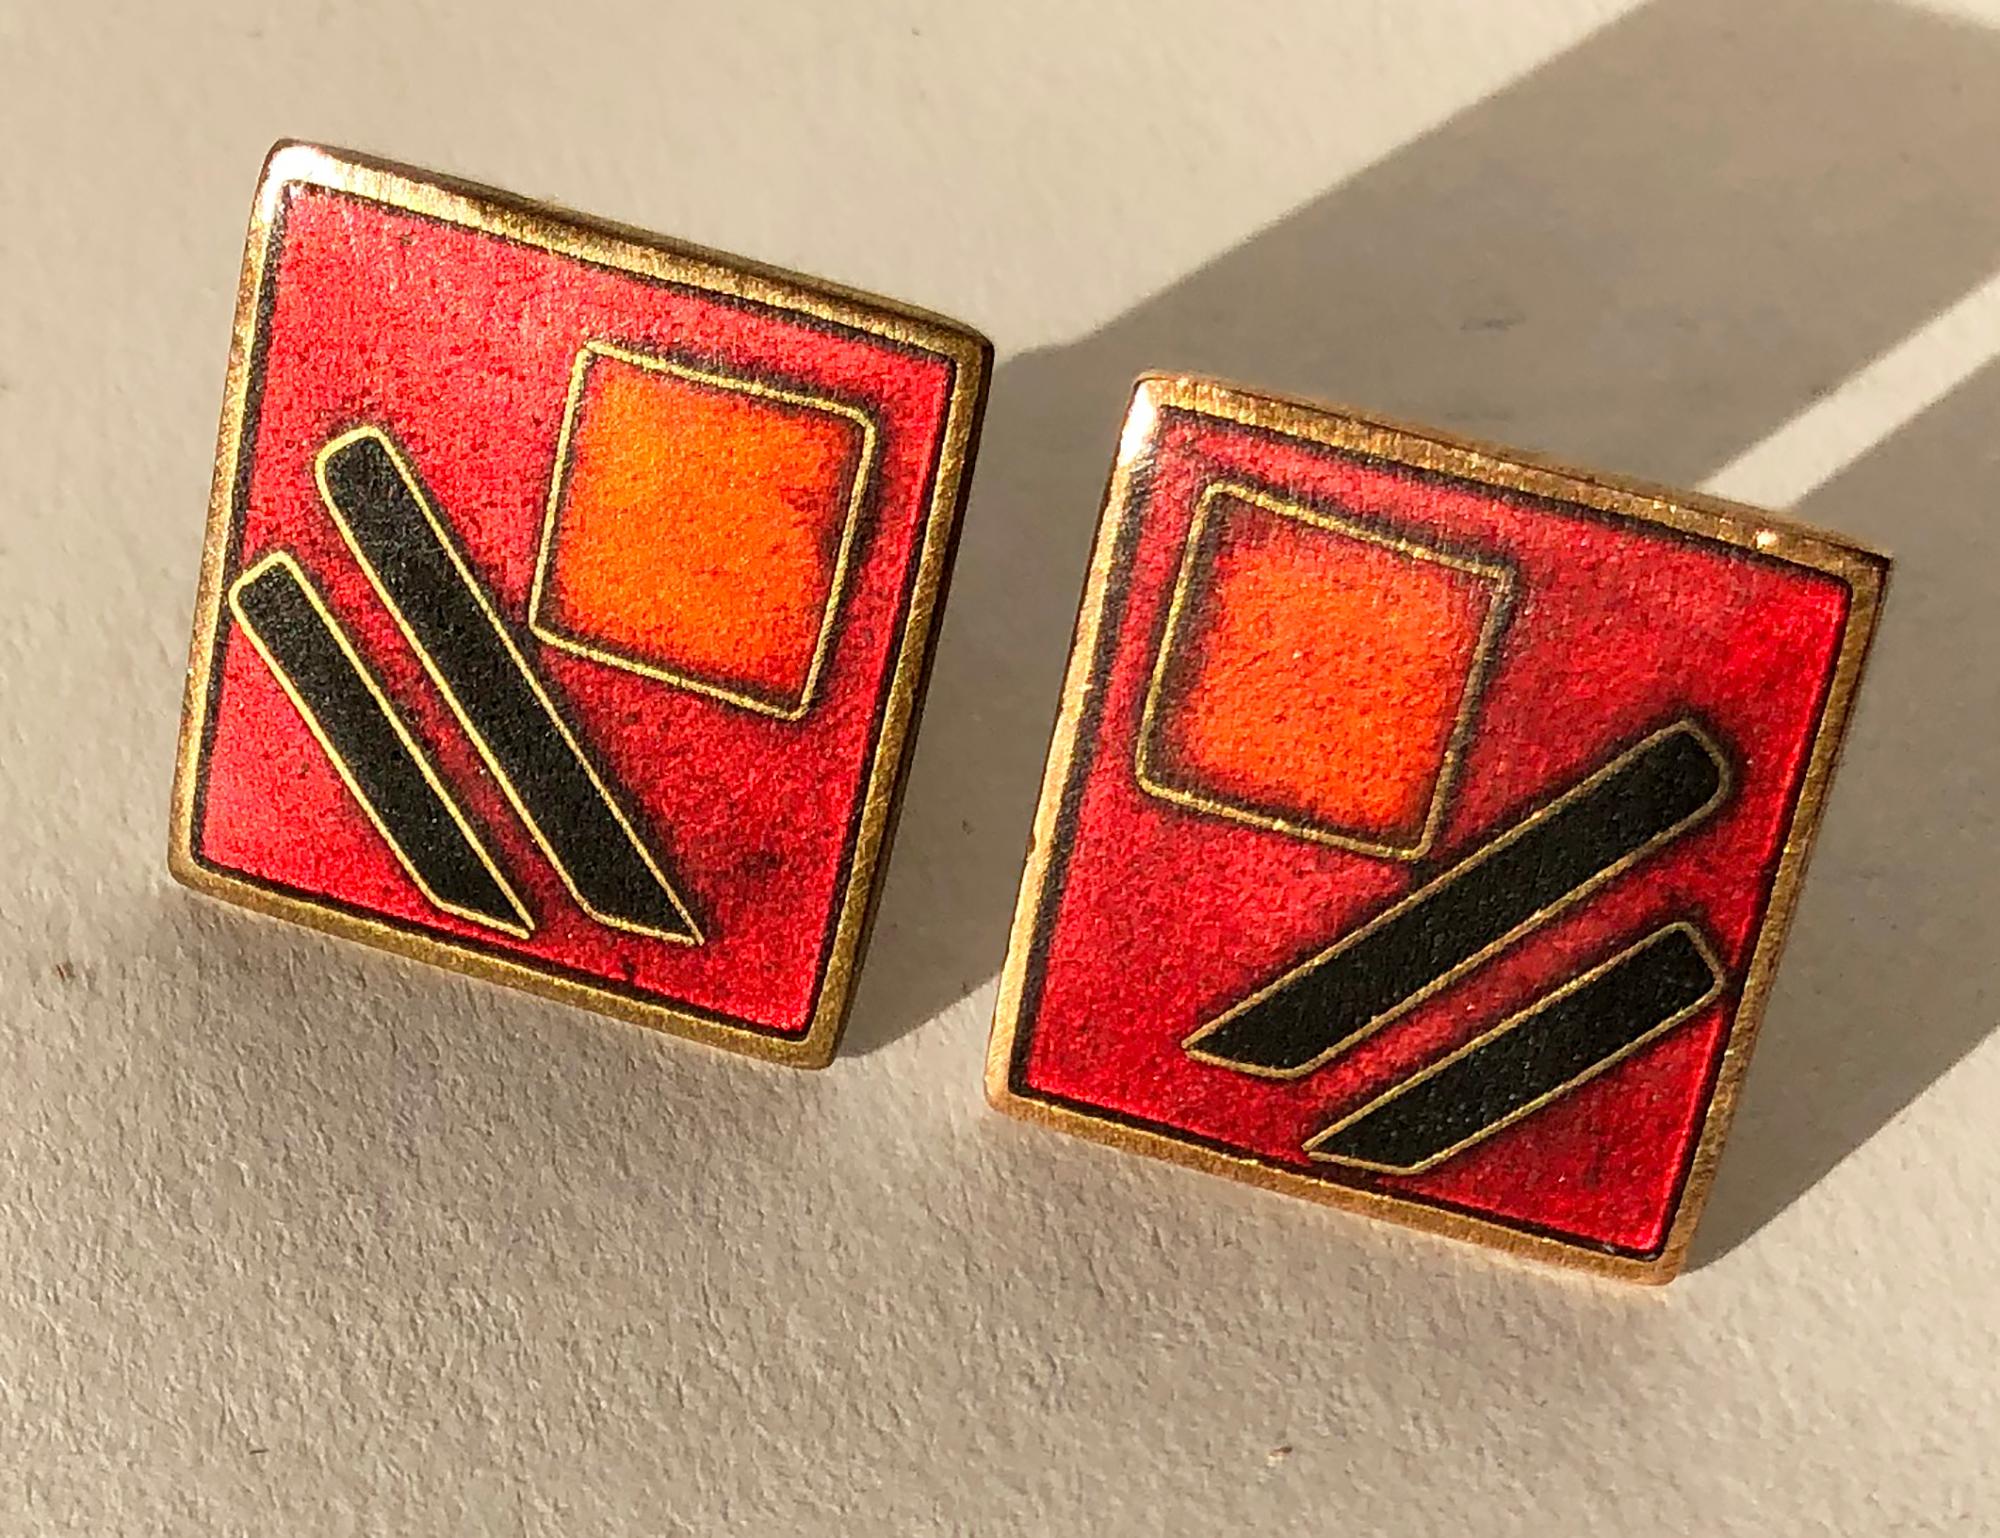 Pair of German modernist brass and enamel cufflinks designed by Karl Schibensky or Scholtz and Lammel, circa 1950s.  Dark red cufflinks measure .75